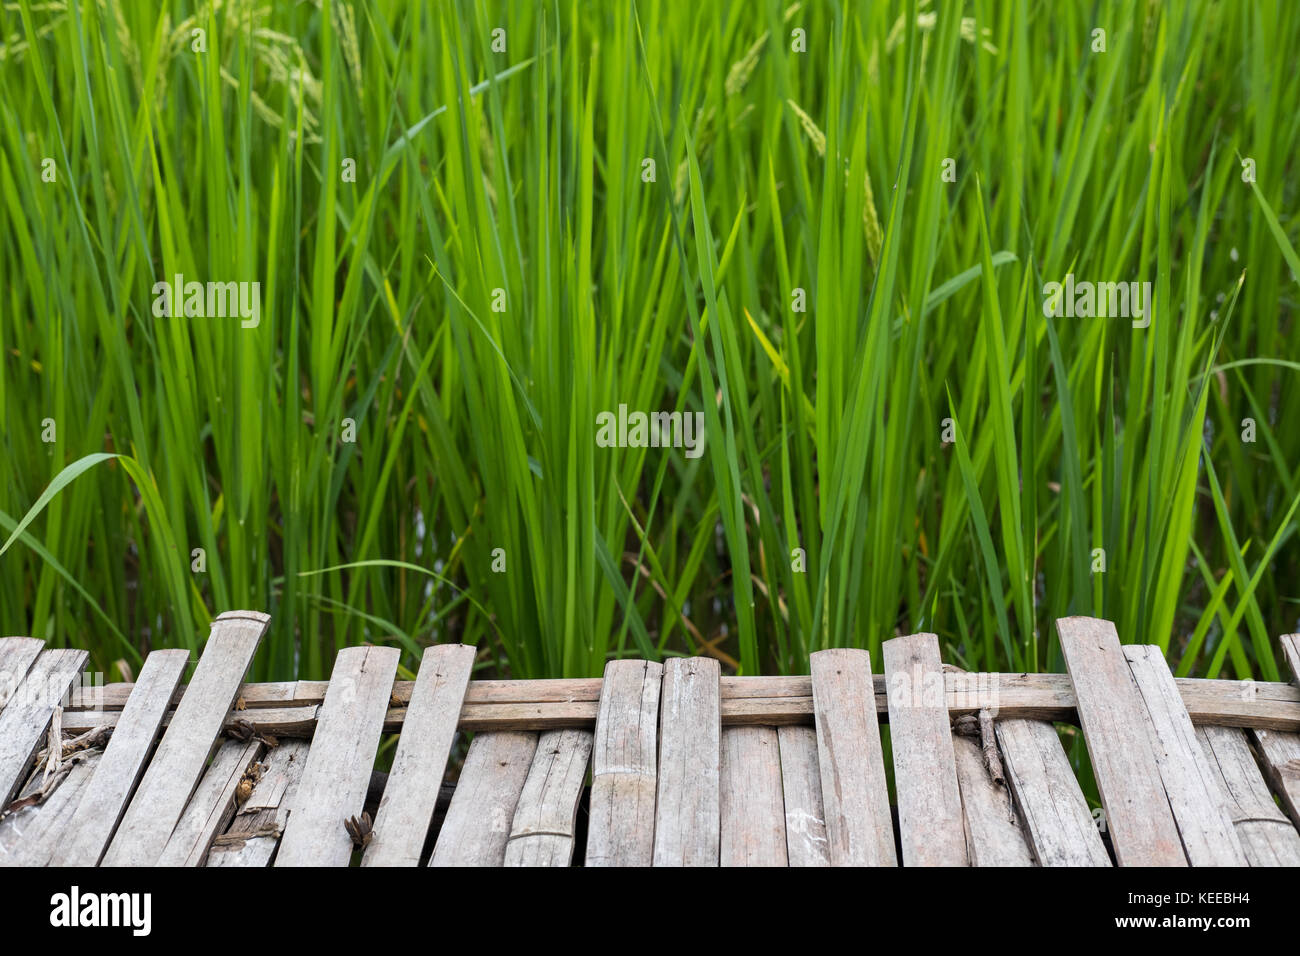 Bambus Gehweg in der Nähe der grünen Reis im Reisfeld. Plantation, Bauernhof, Landwirtschaft Konzept Stockfoto